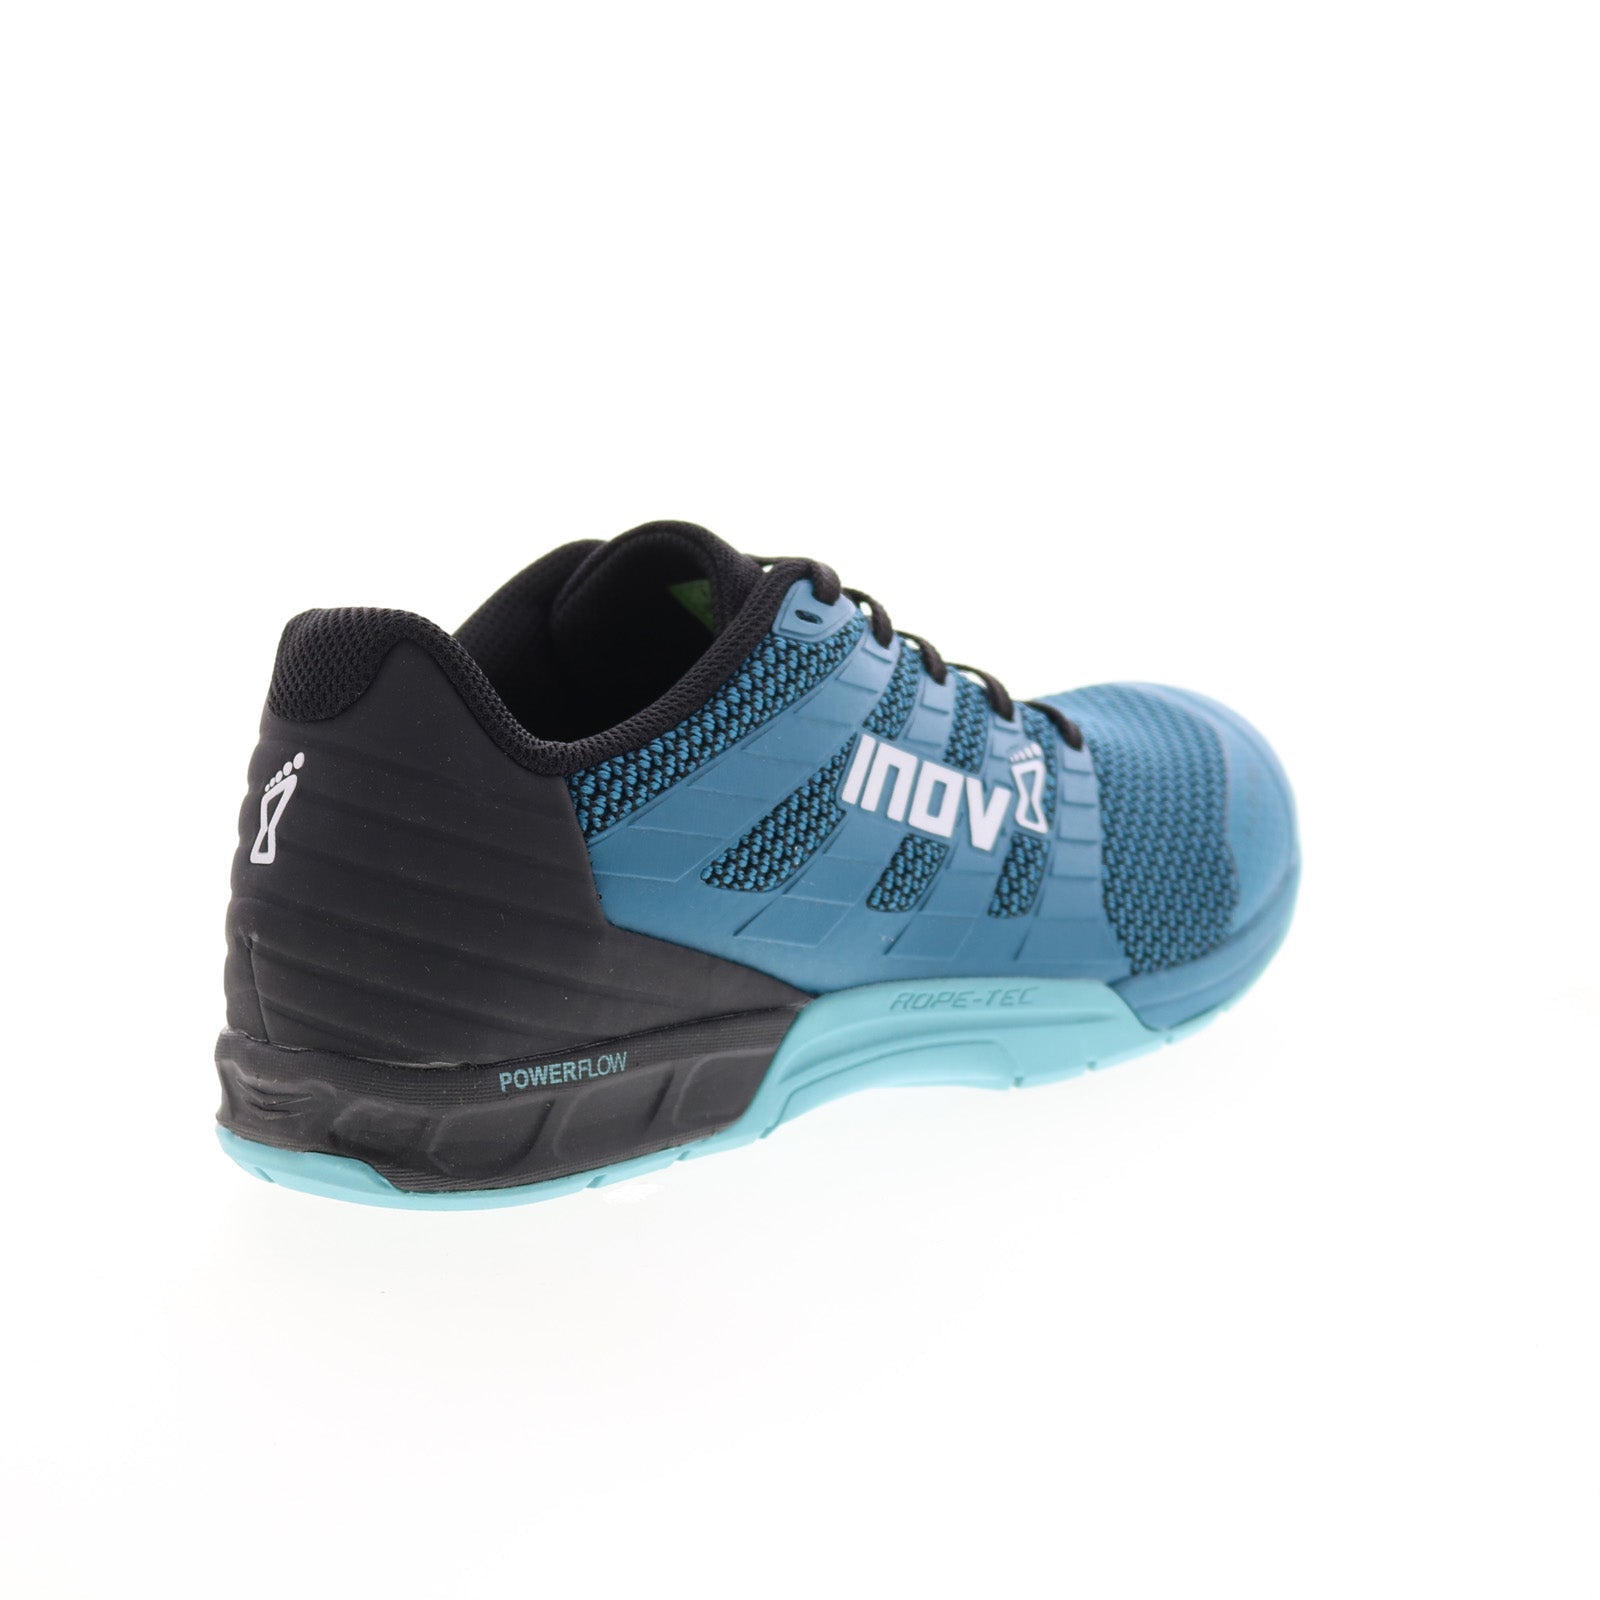 Inov-8 F-Lite 260 V2 000997-TLBL Womens Blue Athletic Cross Training Shoes